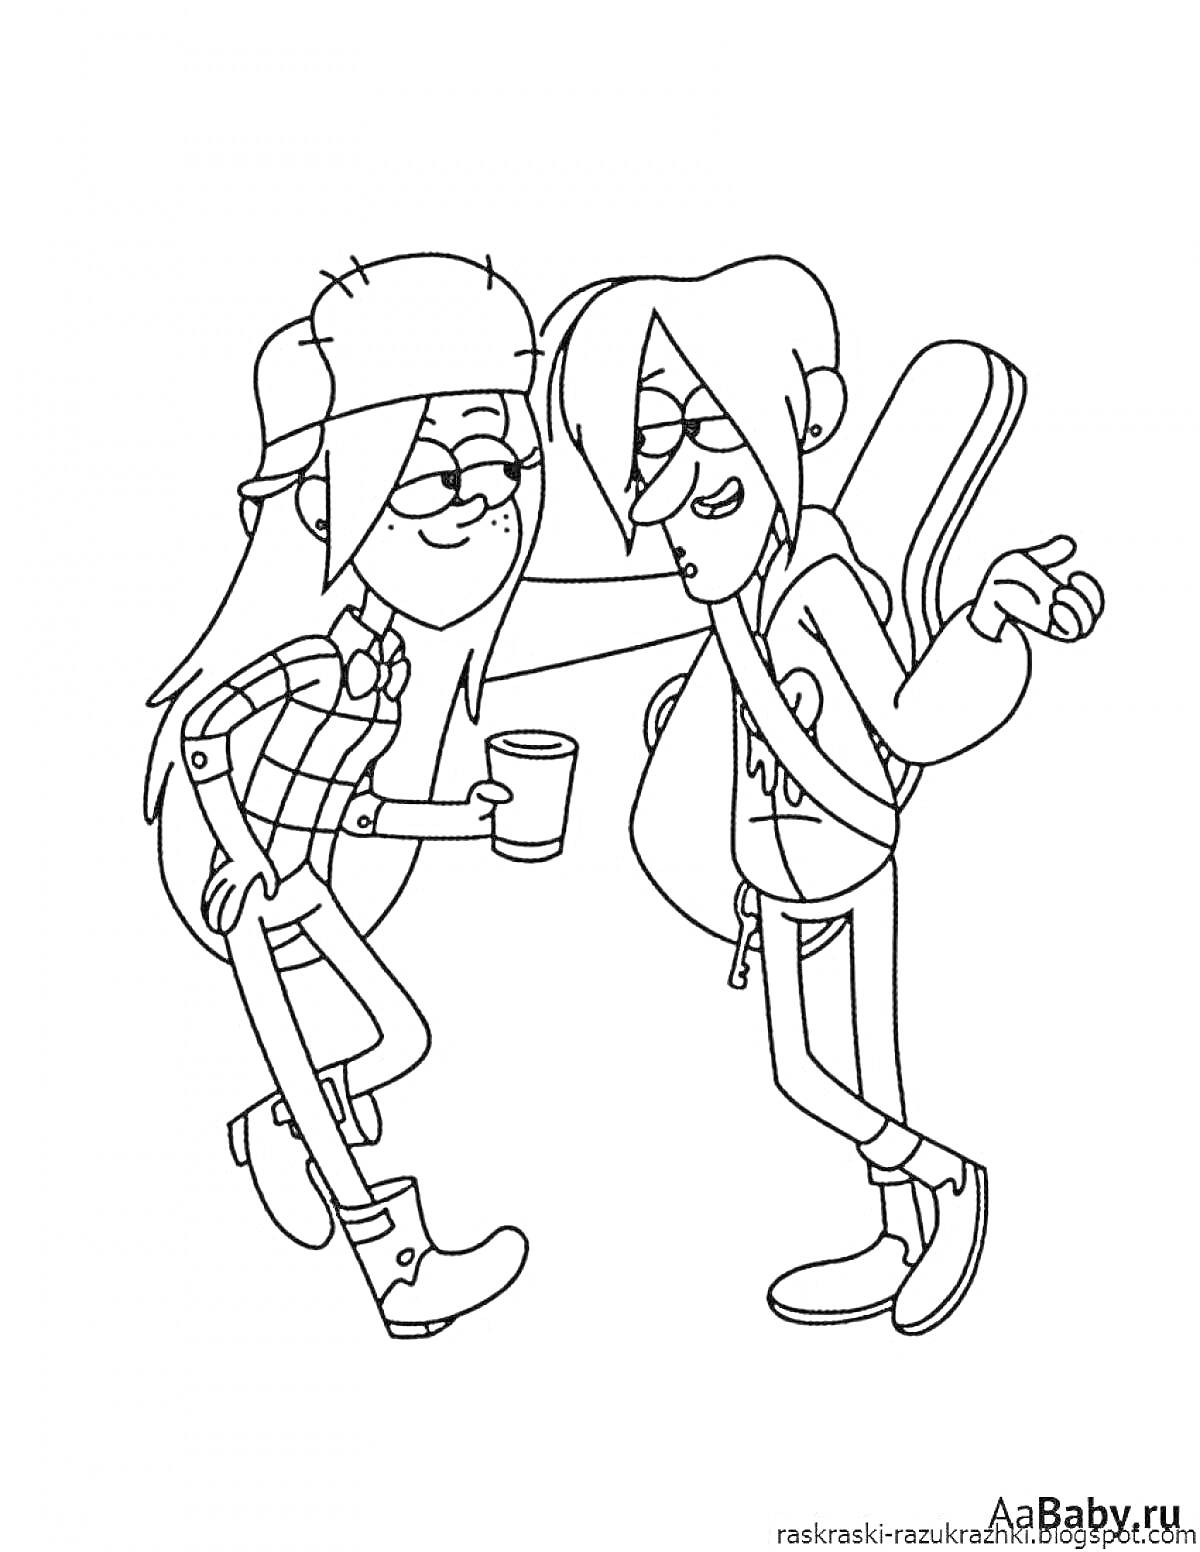 Раскраска Два персонажа Gravity Falls, один с чашкой и в меховой шапке, другой с гитарой за спиной